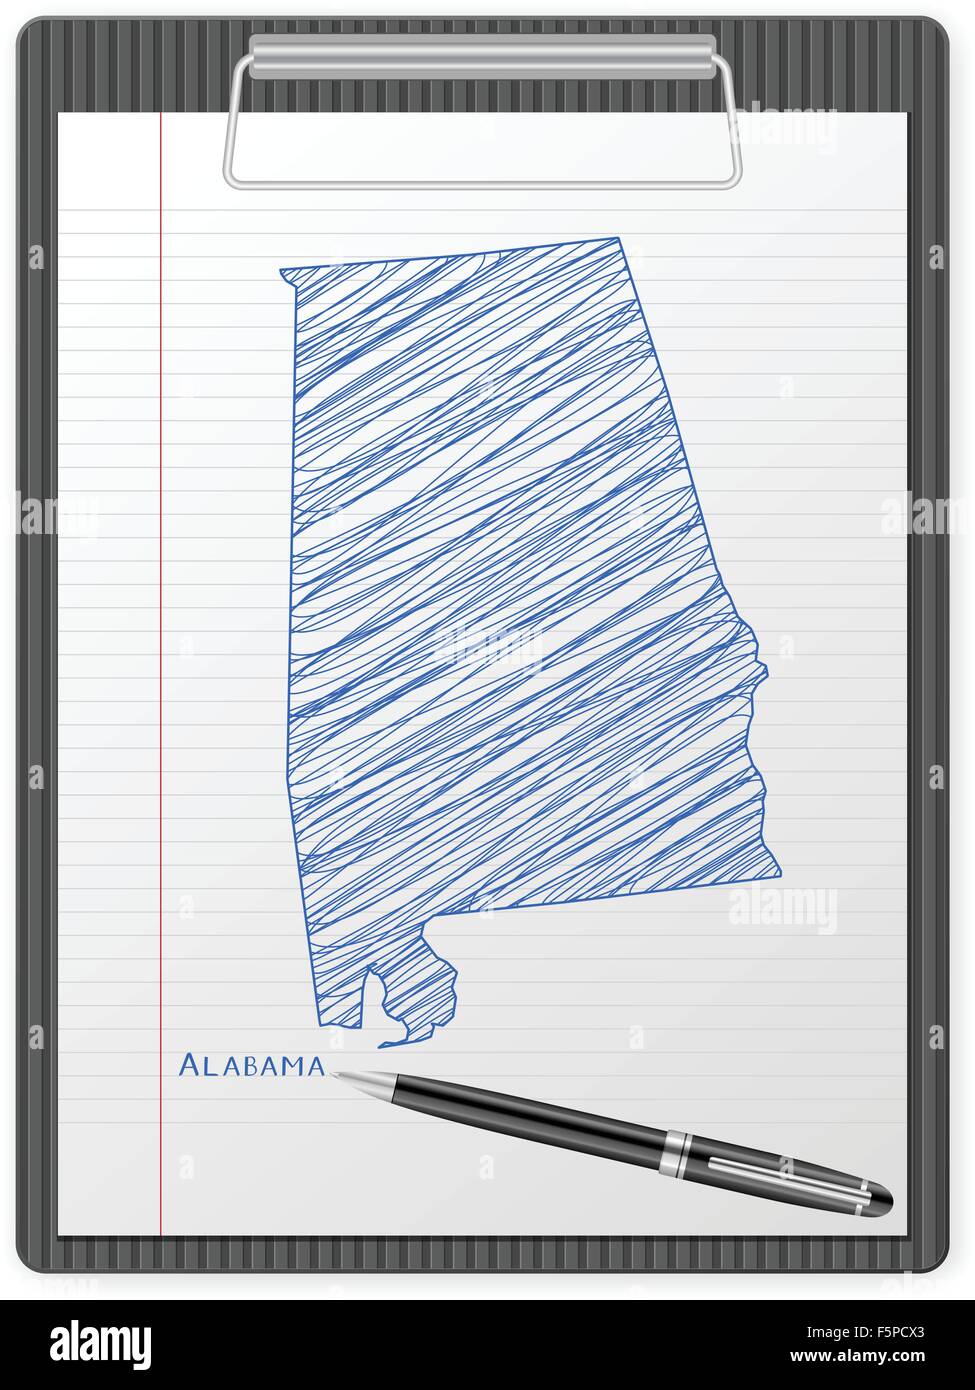 Presse-papiers avec la carte de l'Alabama de dessin. Vector illustration. Illustration de Vecteur